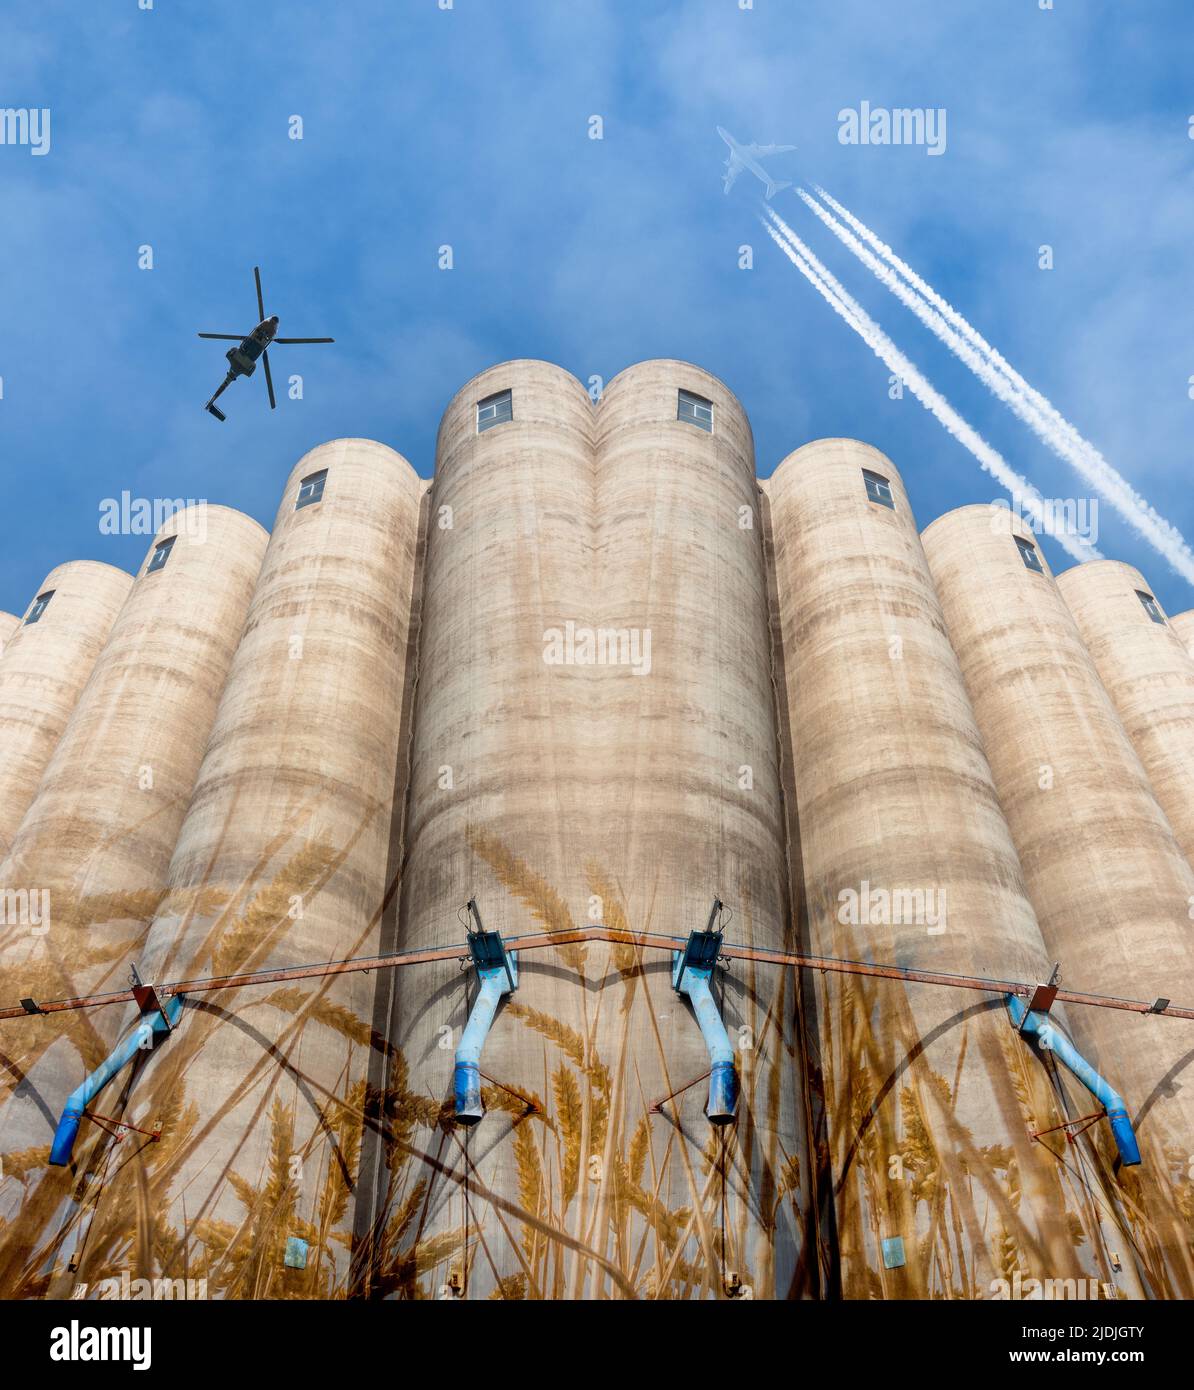 Silos à grains avec avion et hélicoptère volant au-dessus. Russie, Ukraine guerre de conflit, blé, pénurie alimentaire, prix... concept image composite Banque D'Images